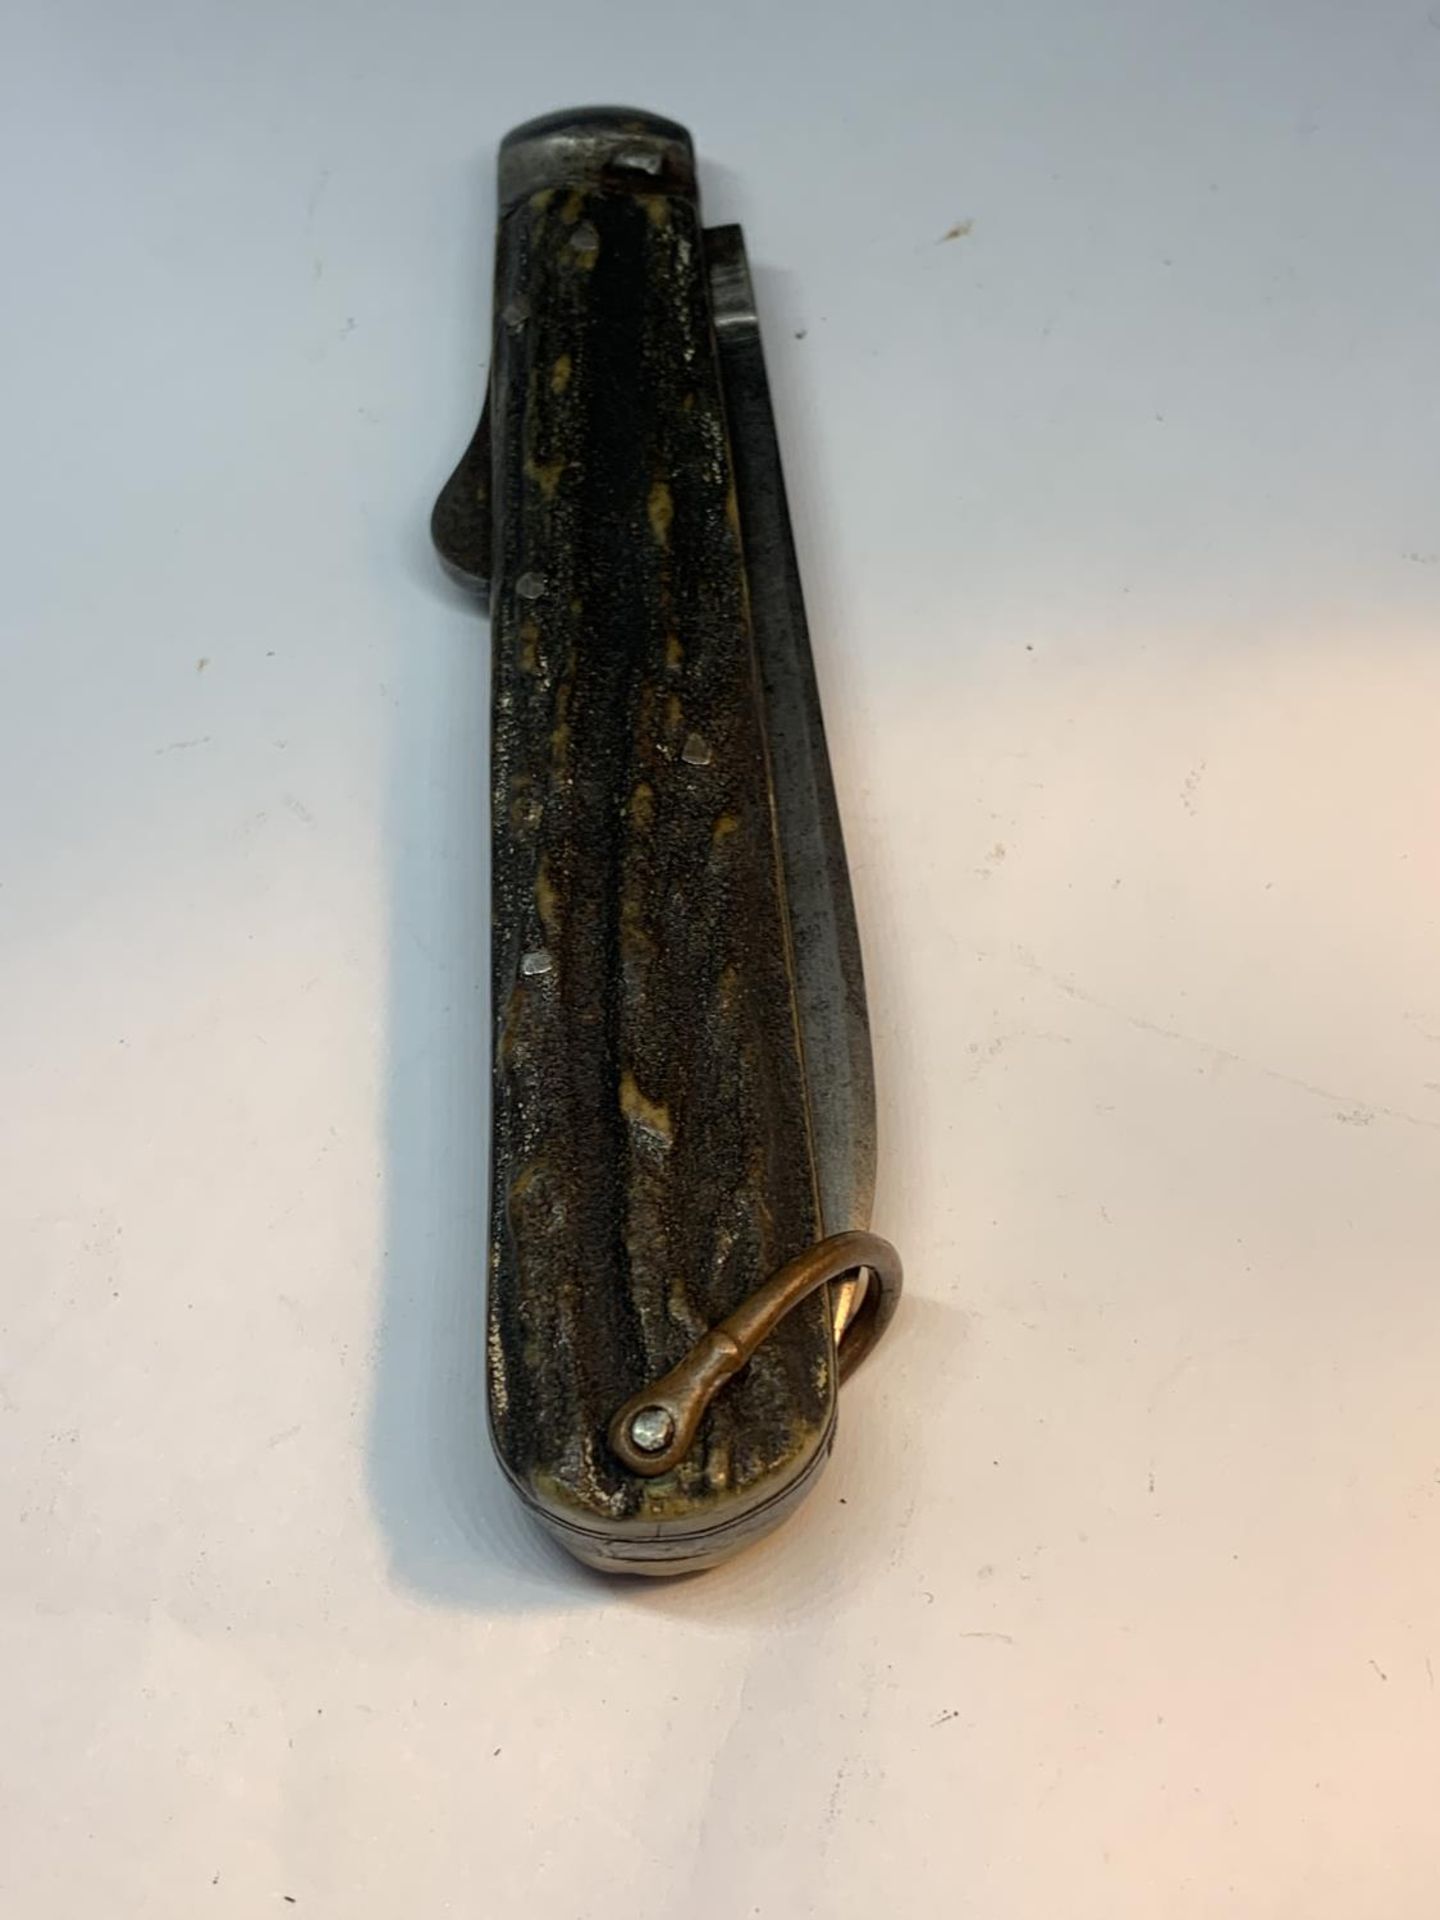 A VINTAGE GREGG SLOANE SQUARE POCKET KNIFE - Image 4 of 4